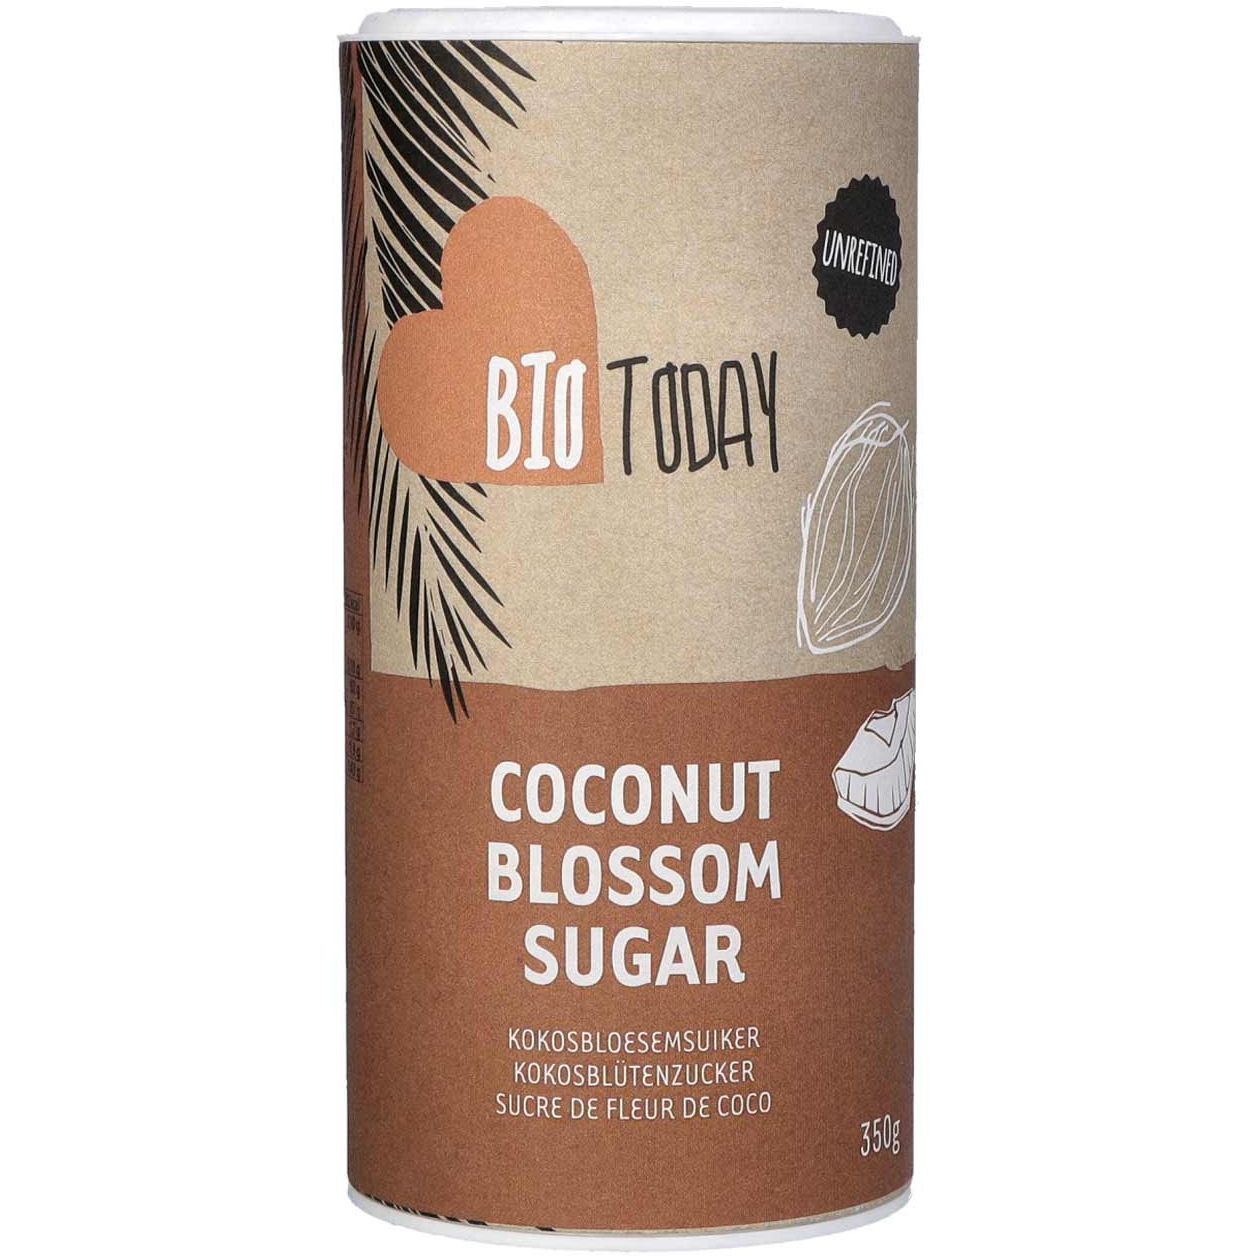 Сахар Bio Today кокосовый, органический, 350 г - фото 1